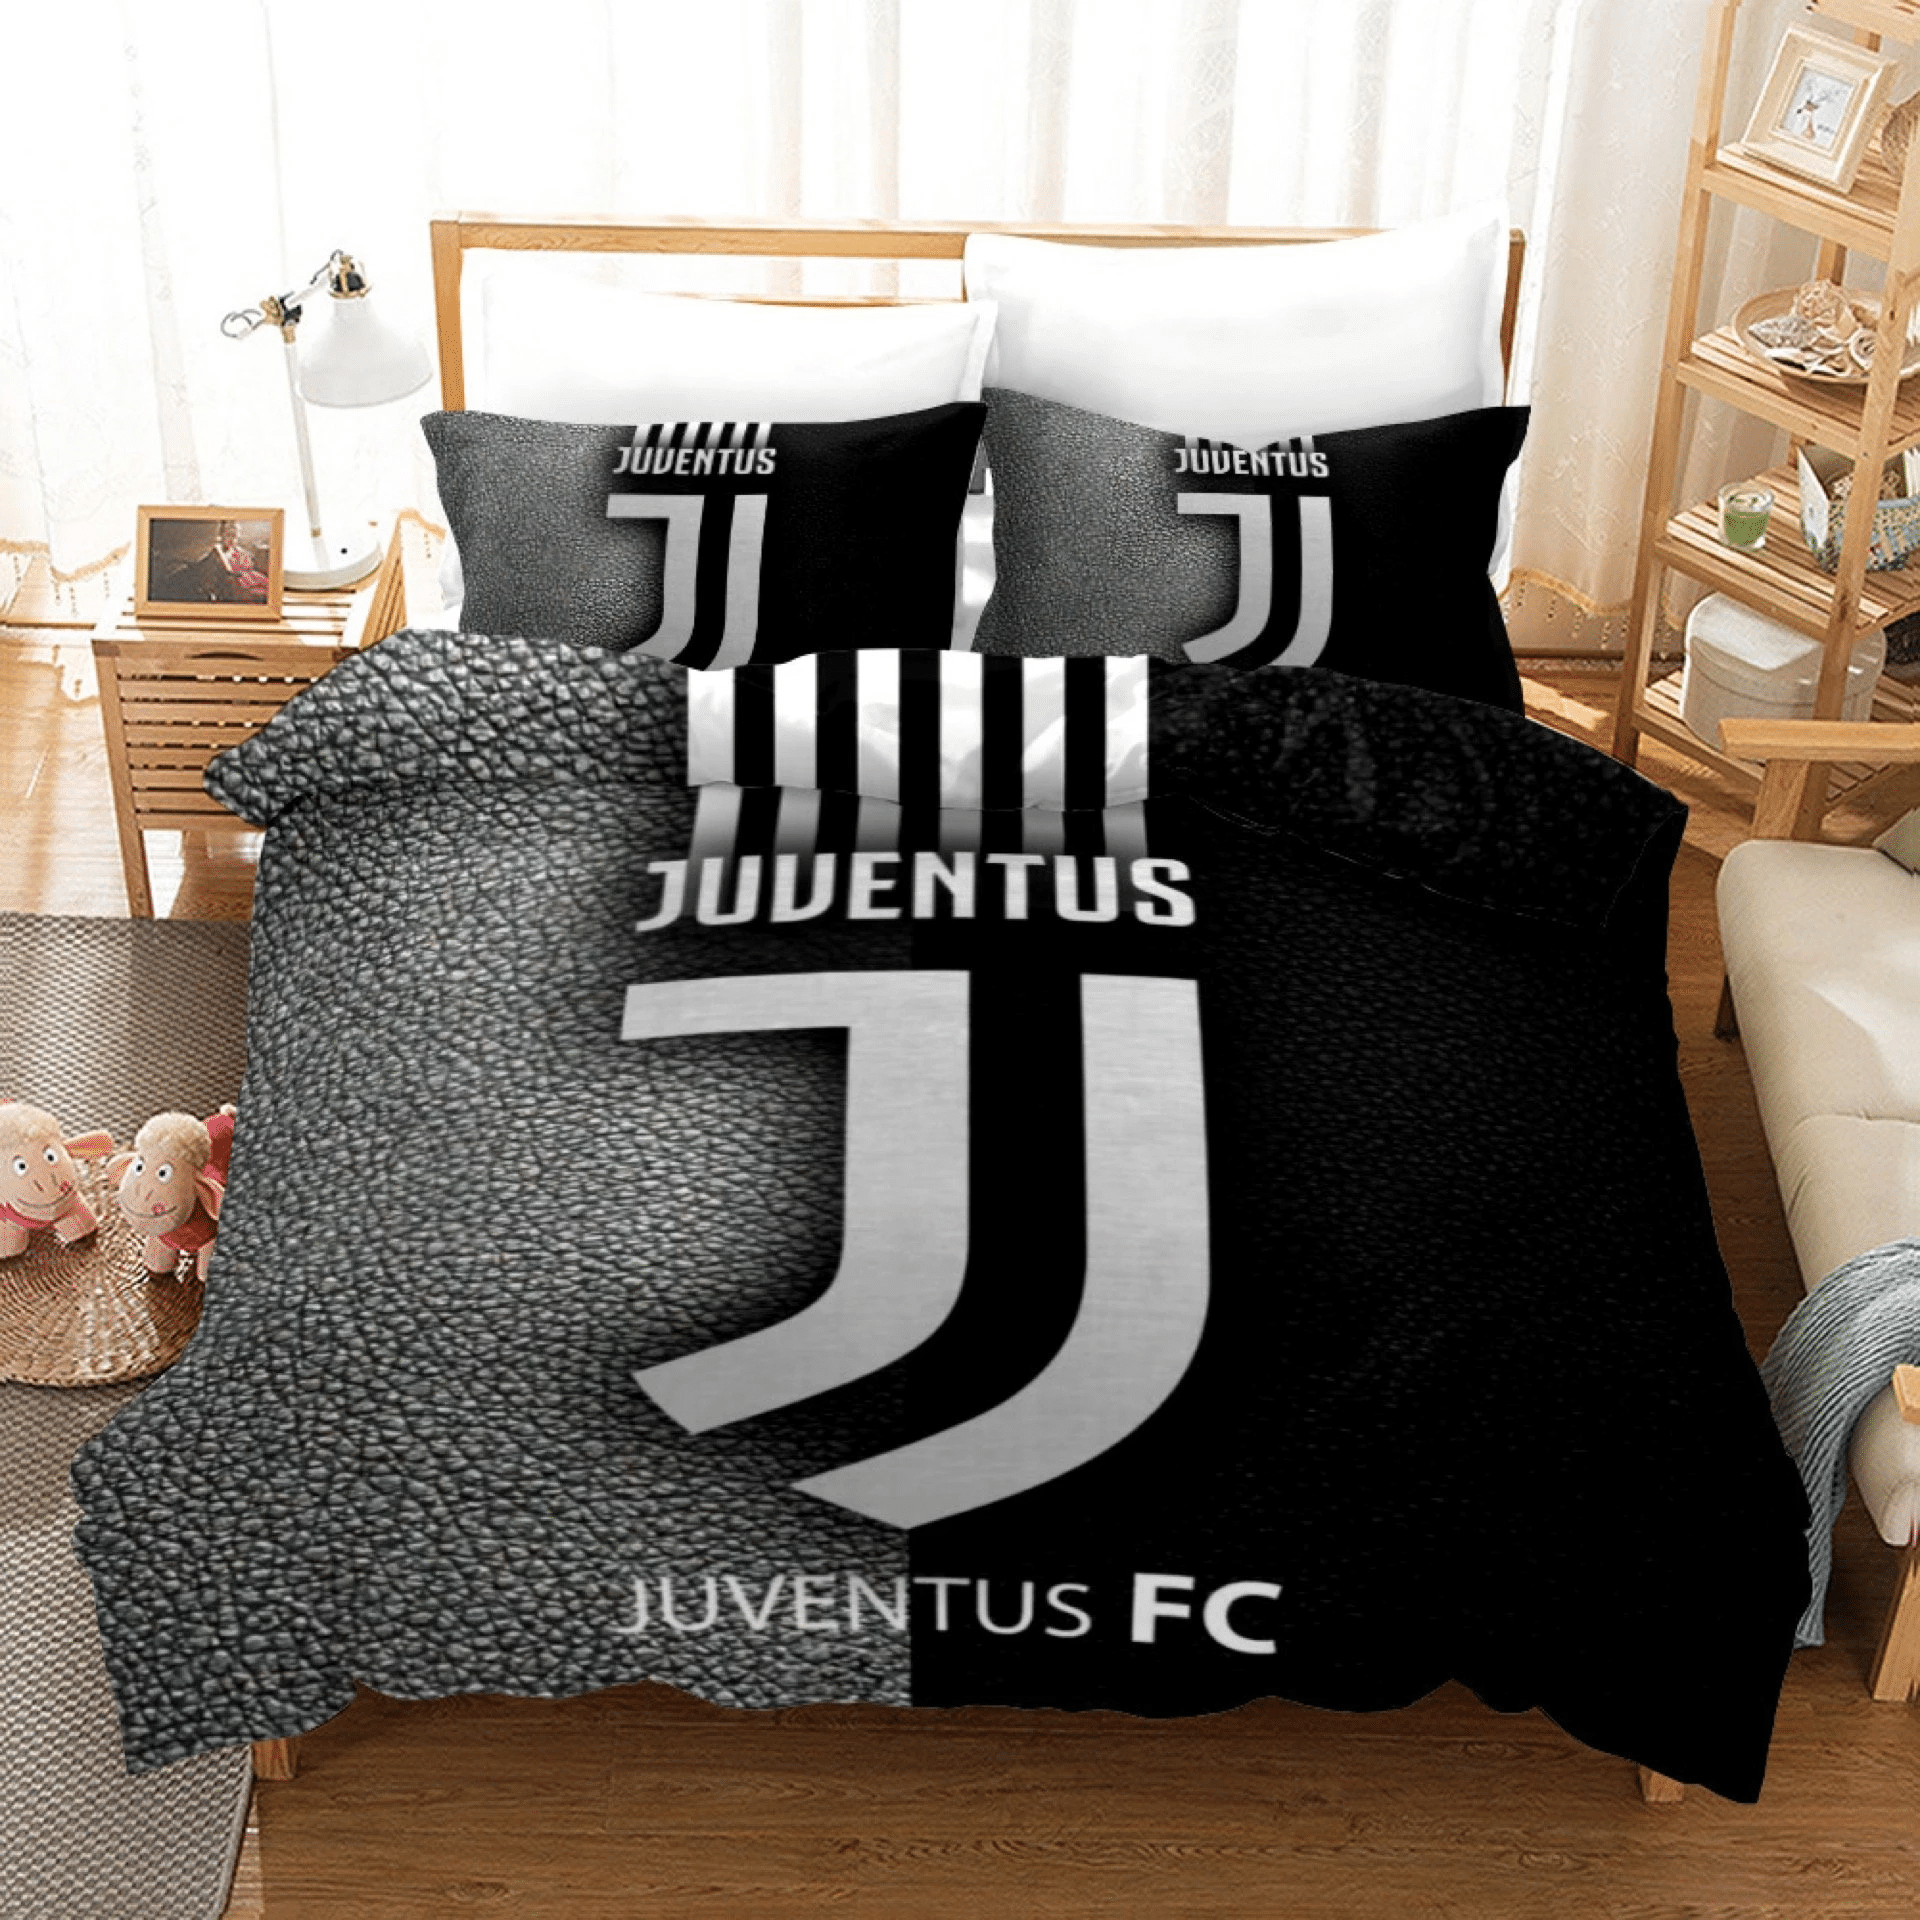 Juventus Cristiano Ronaldo Football Club 10 Duvet Cover Pillowcase Bedding